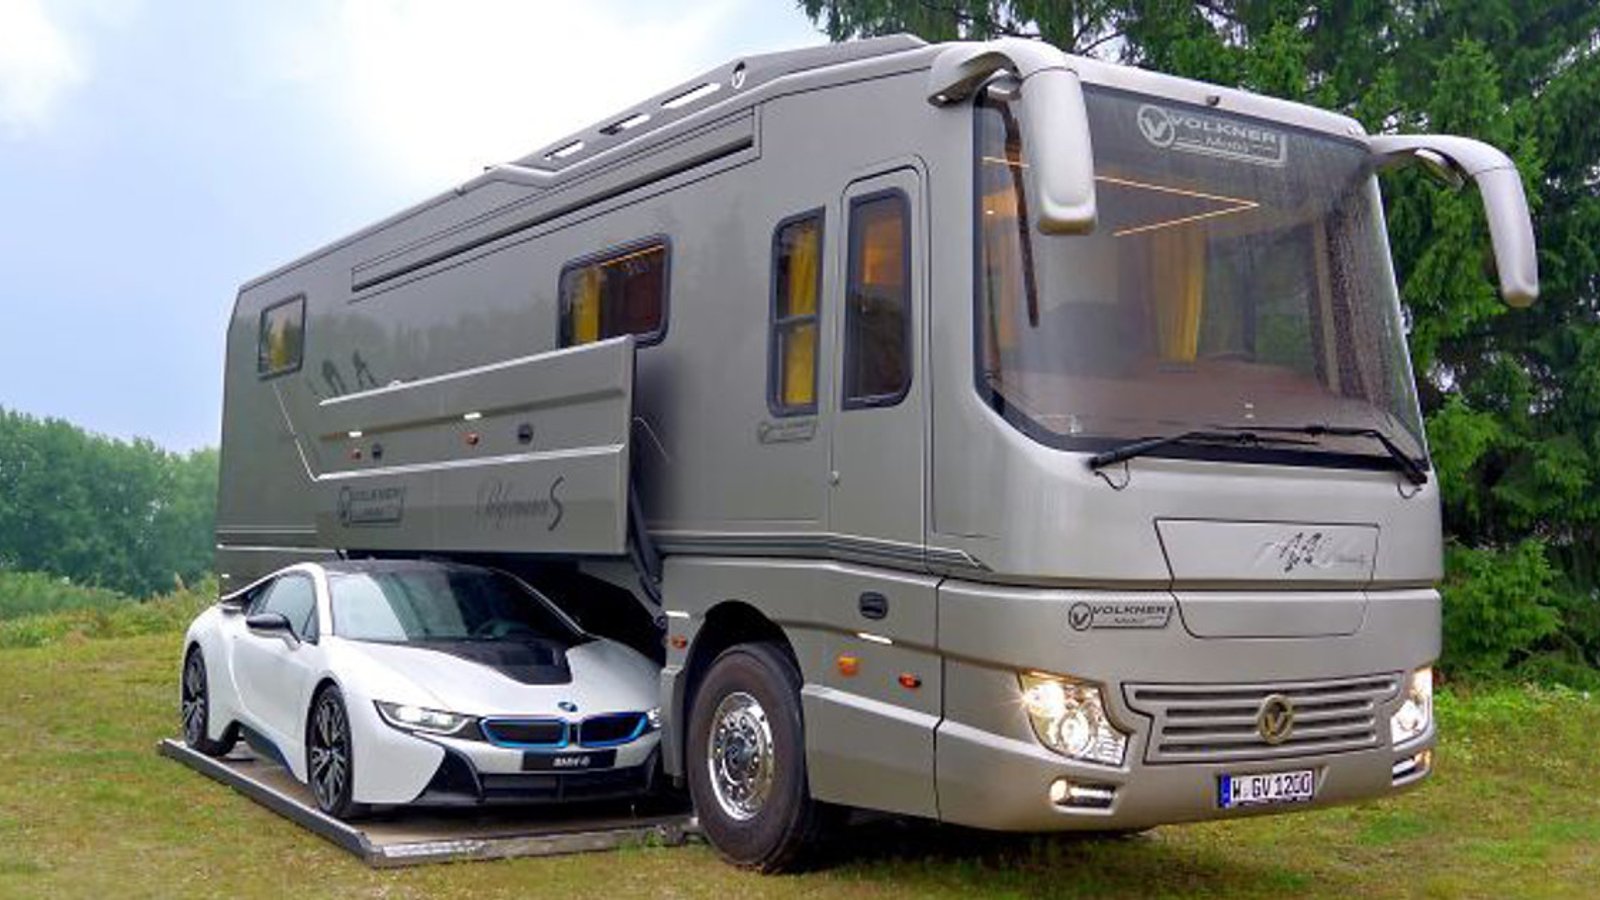 Un camping-car de 1.7 millions$ avec garage intégré parait bien ordinaire... Jusqu'à ce qu'on voit l'intérieur! 